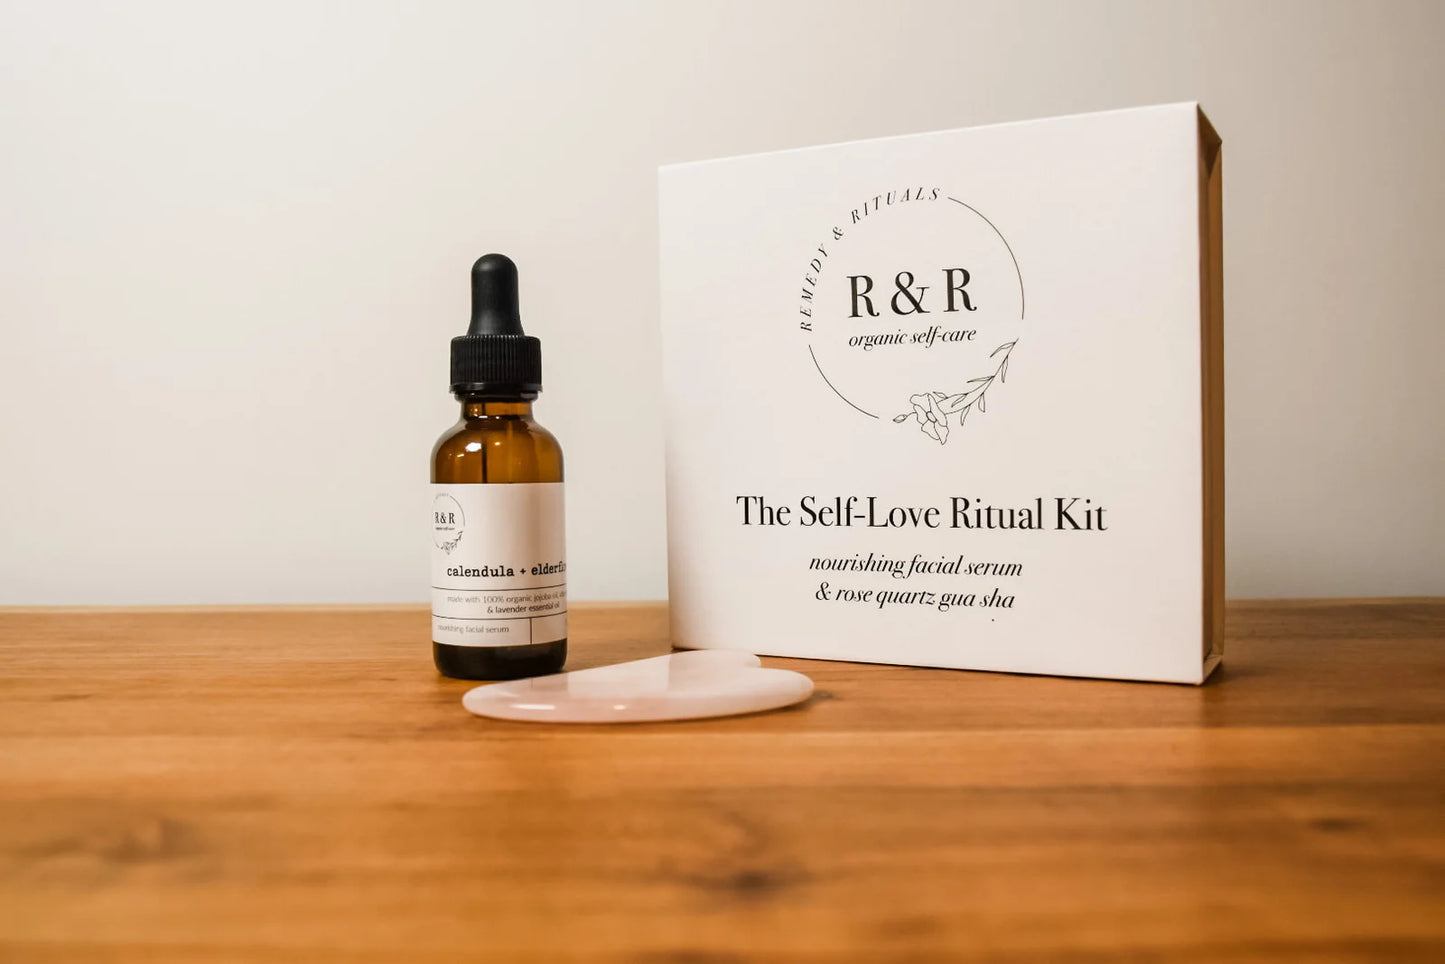 The Self-Love Ritual Kit